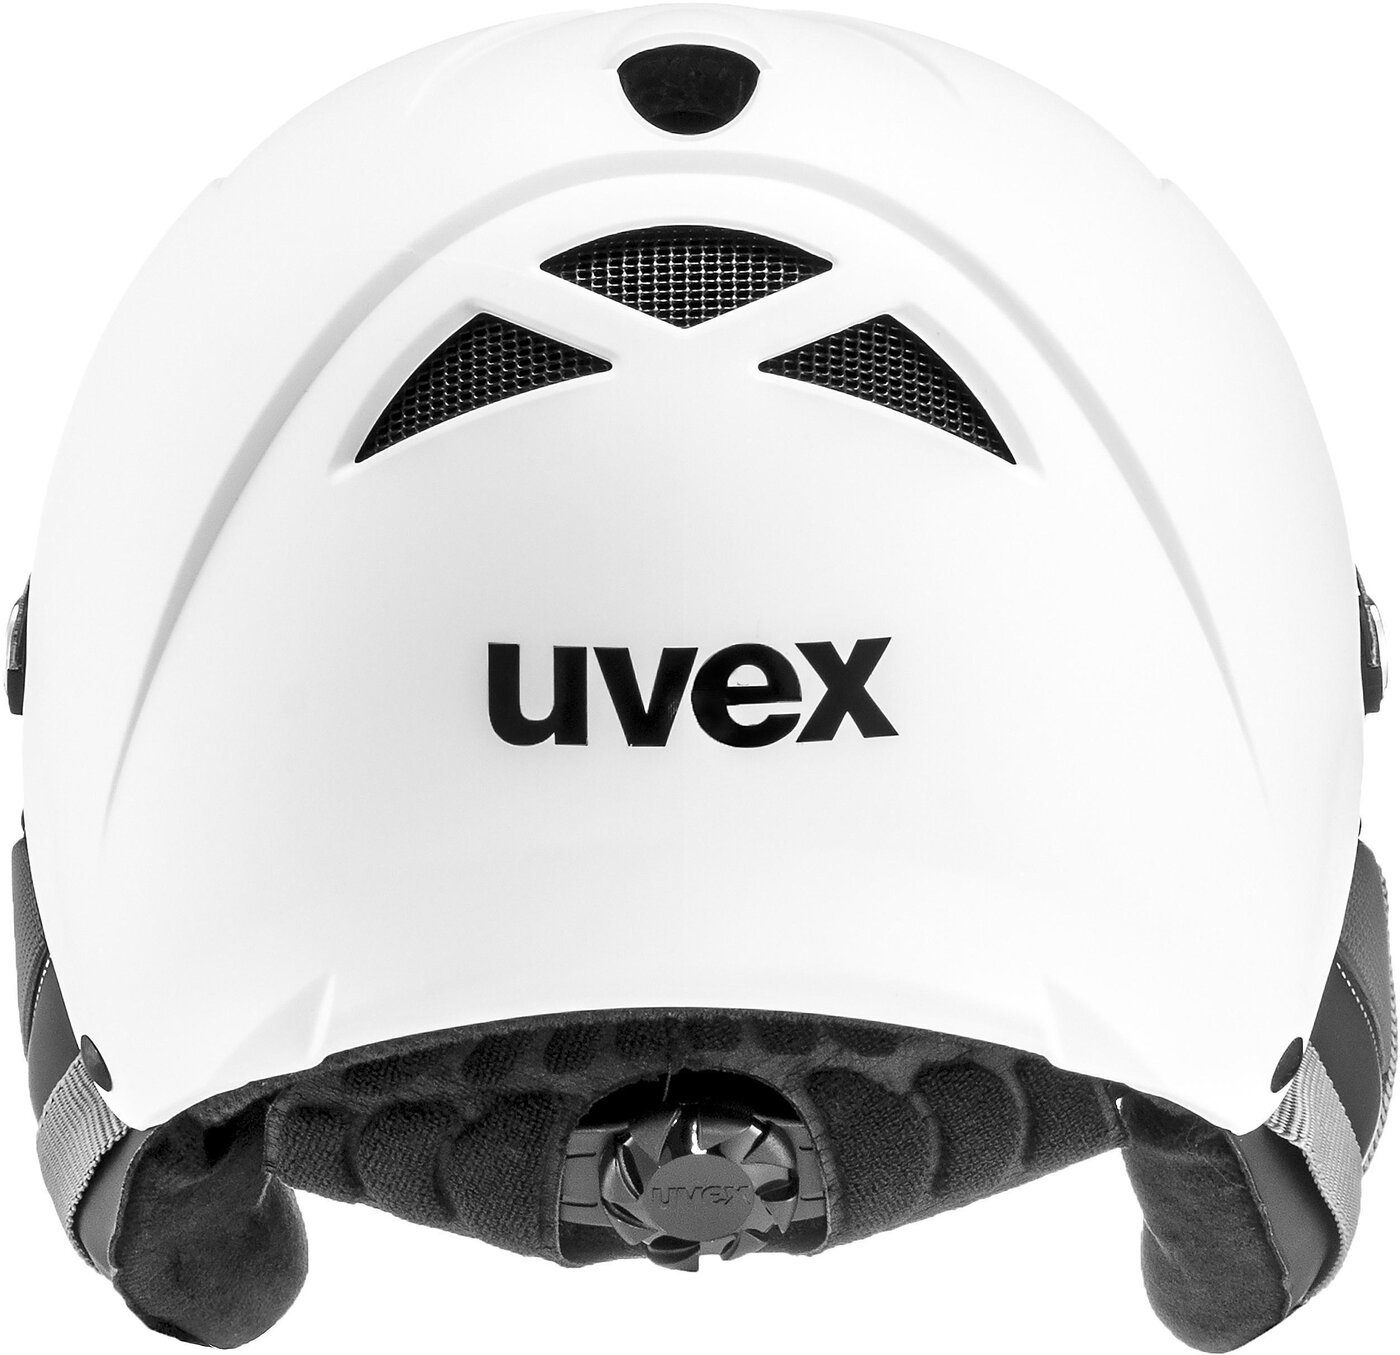 Uvex Skihelm UVEX hlmt 300 visor vario Herren Skihelm mit Visier